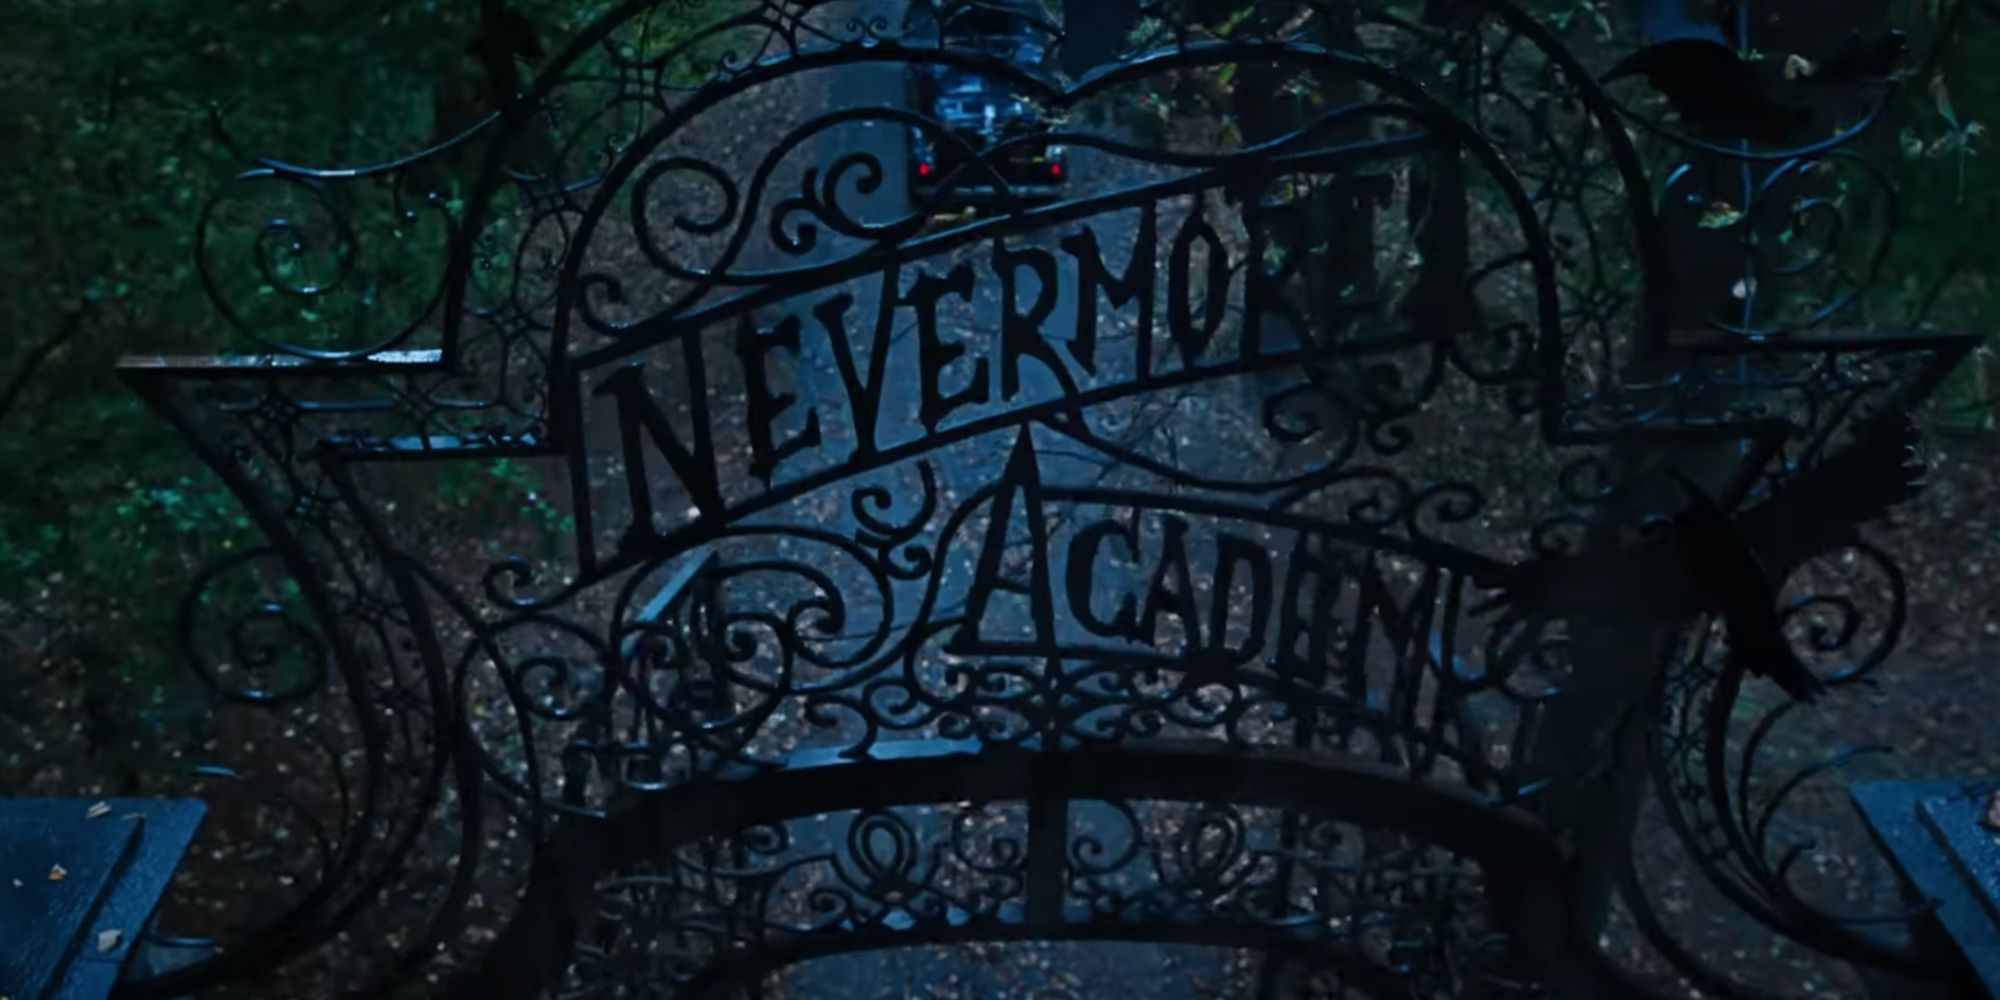 Nevermore_Academy_Wednesday Addams